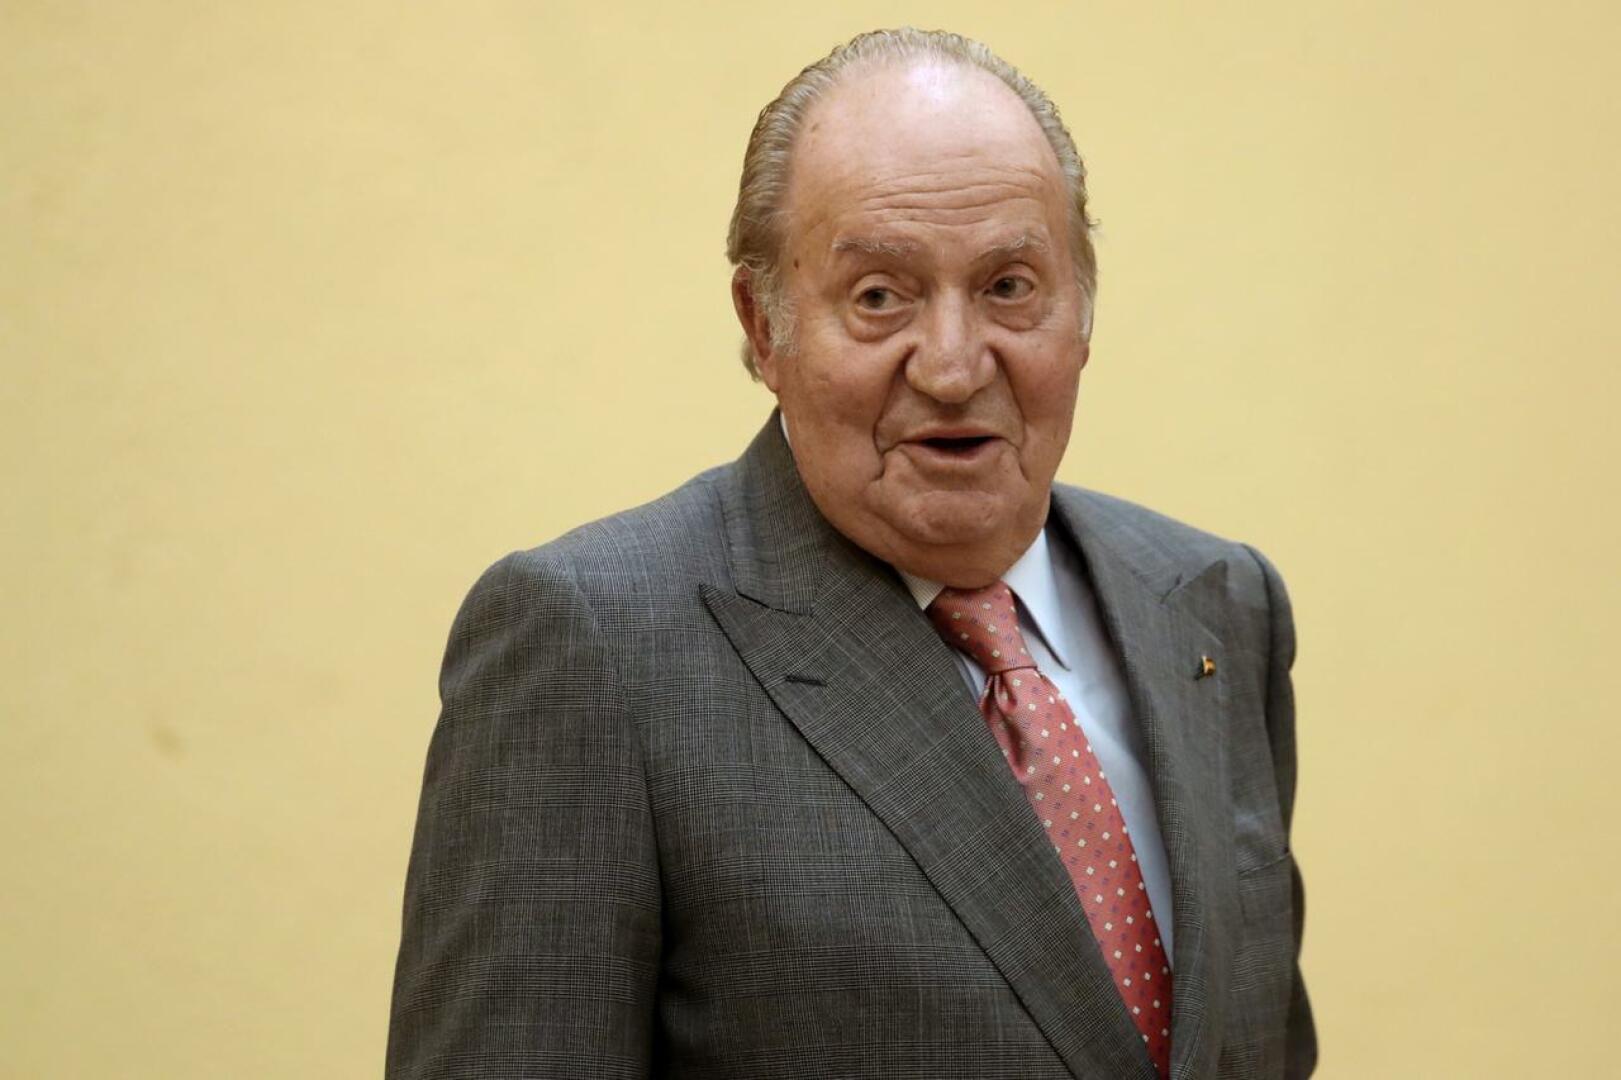 Espanjan ex-kuninkaan Juan Carlosin tämänhetkinen olinpaikka on tuntematon. Kuva on arkistokuva vuodelta 2017.